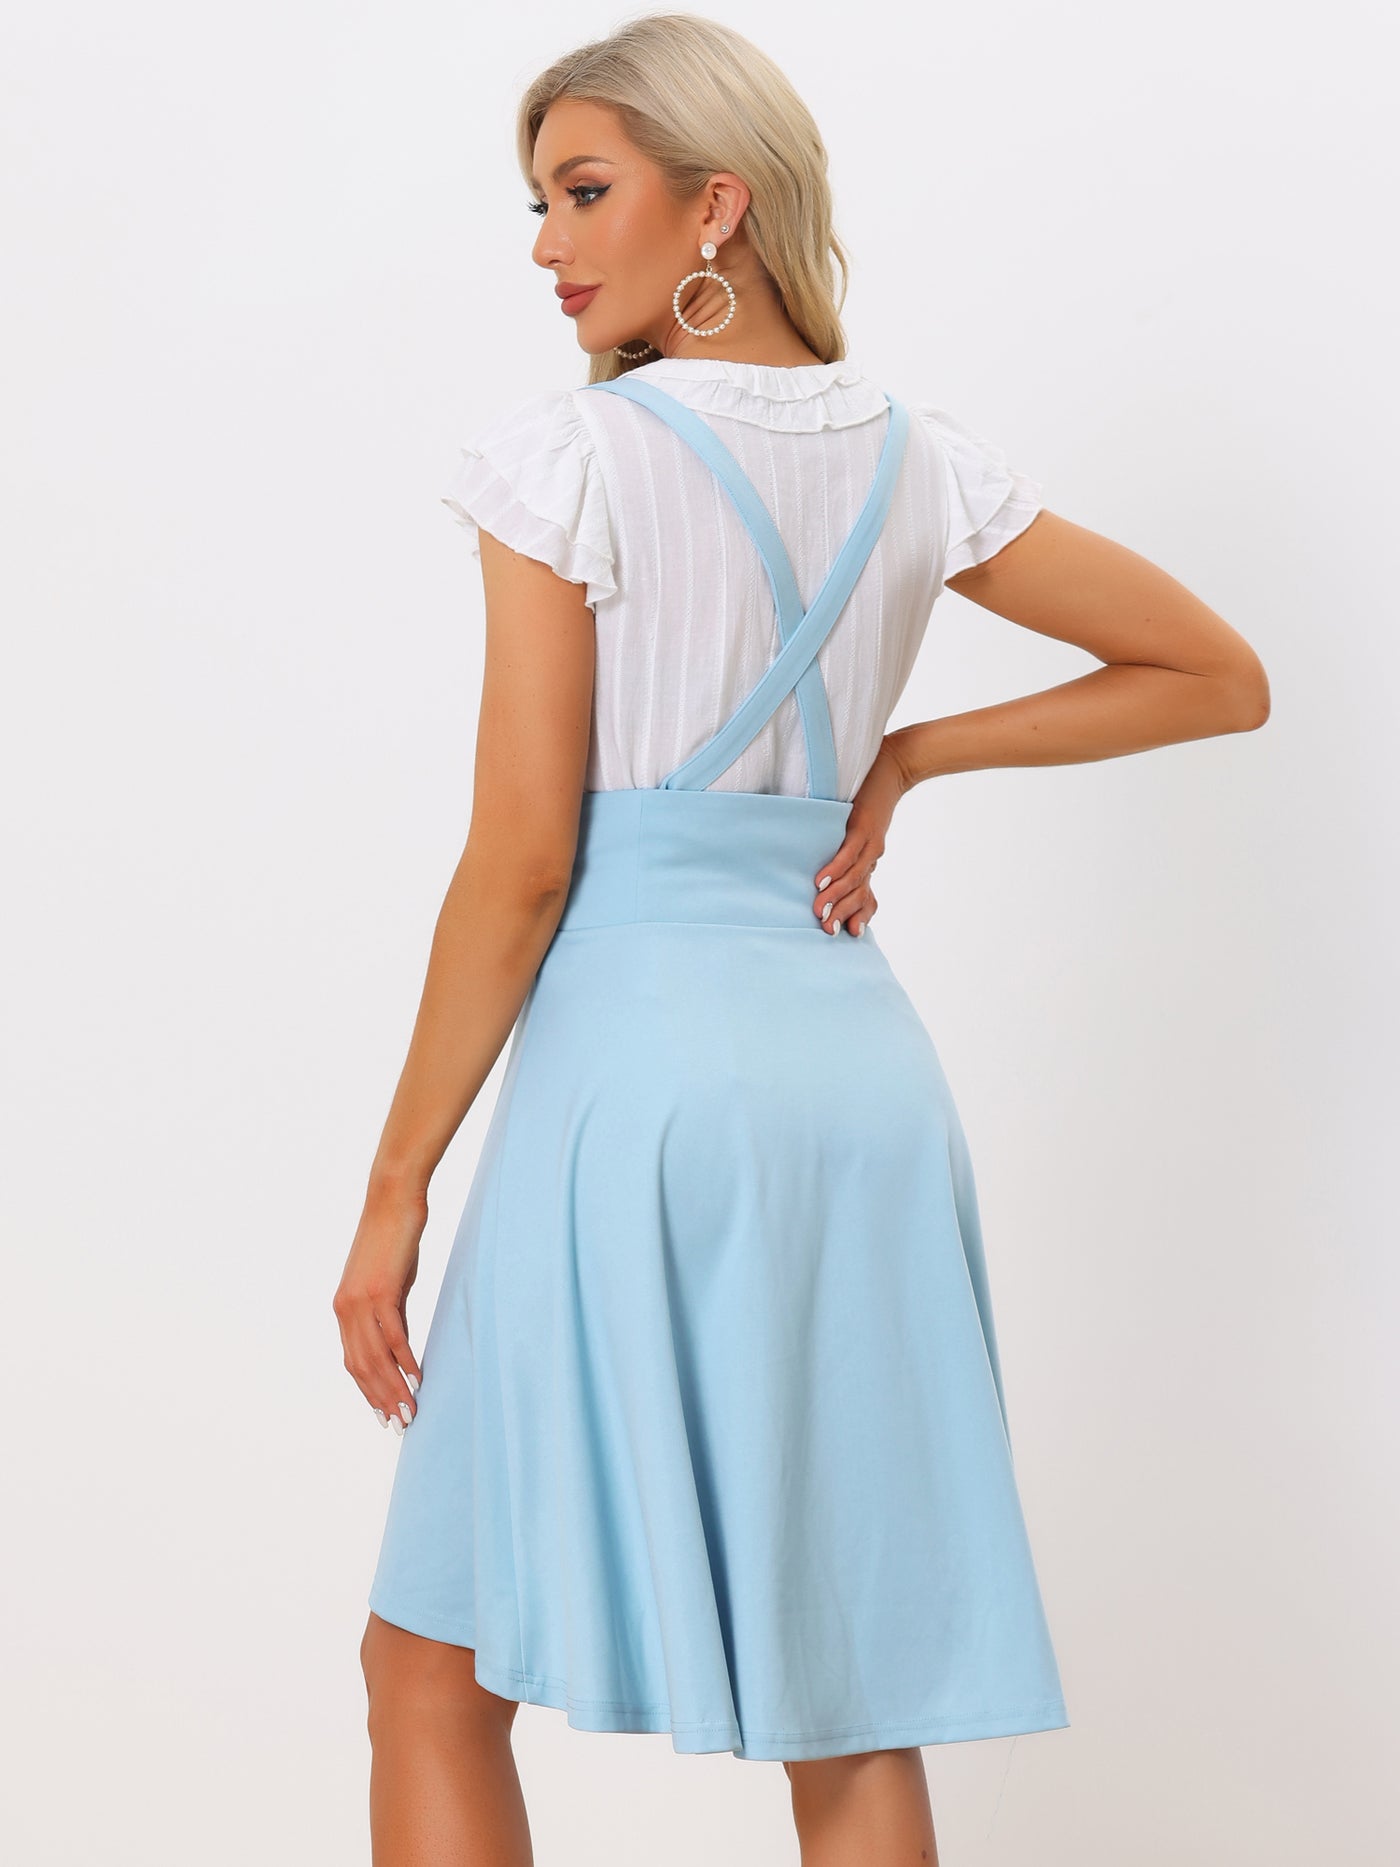 Allegra K Gothic Brace Skirts for Women's Irregular Hem Midi Lace Up Suspender Skirt